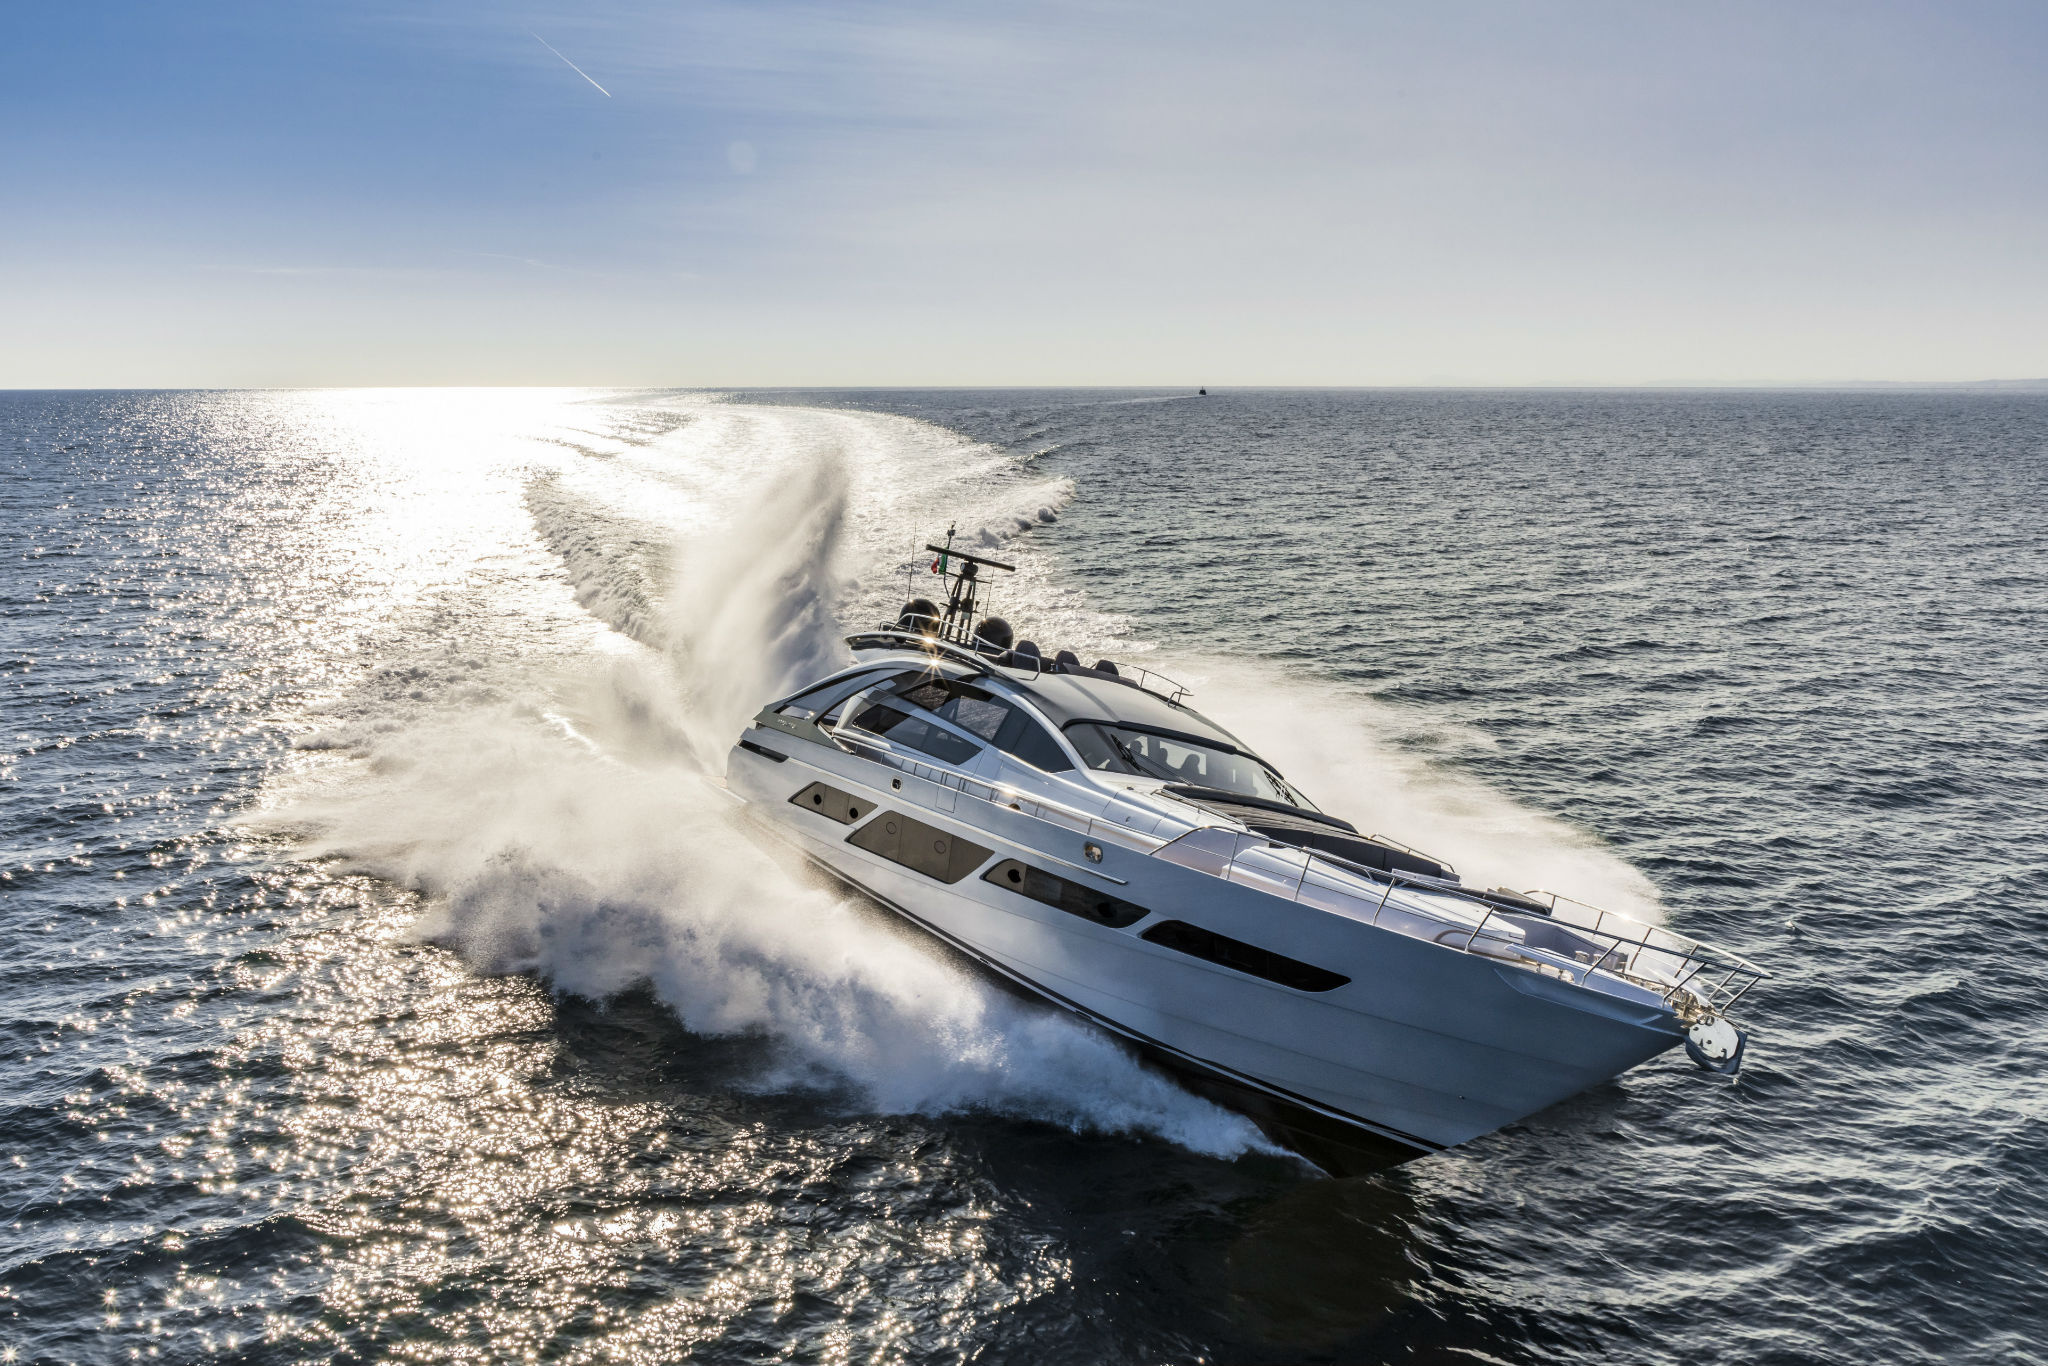 Pleasure Boat: Pershing 9X, Luxury yacht, Speed motor vessel, Ocean. 2050x1370 HD Wallpaper.